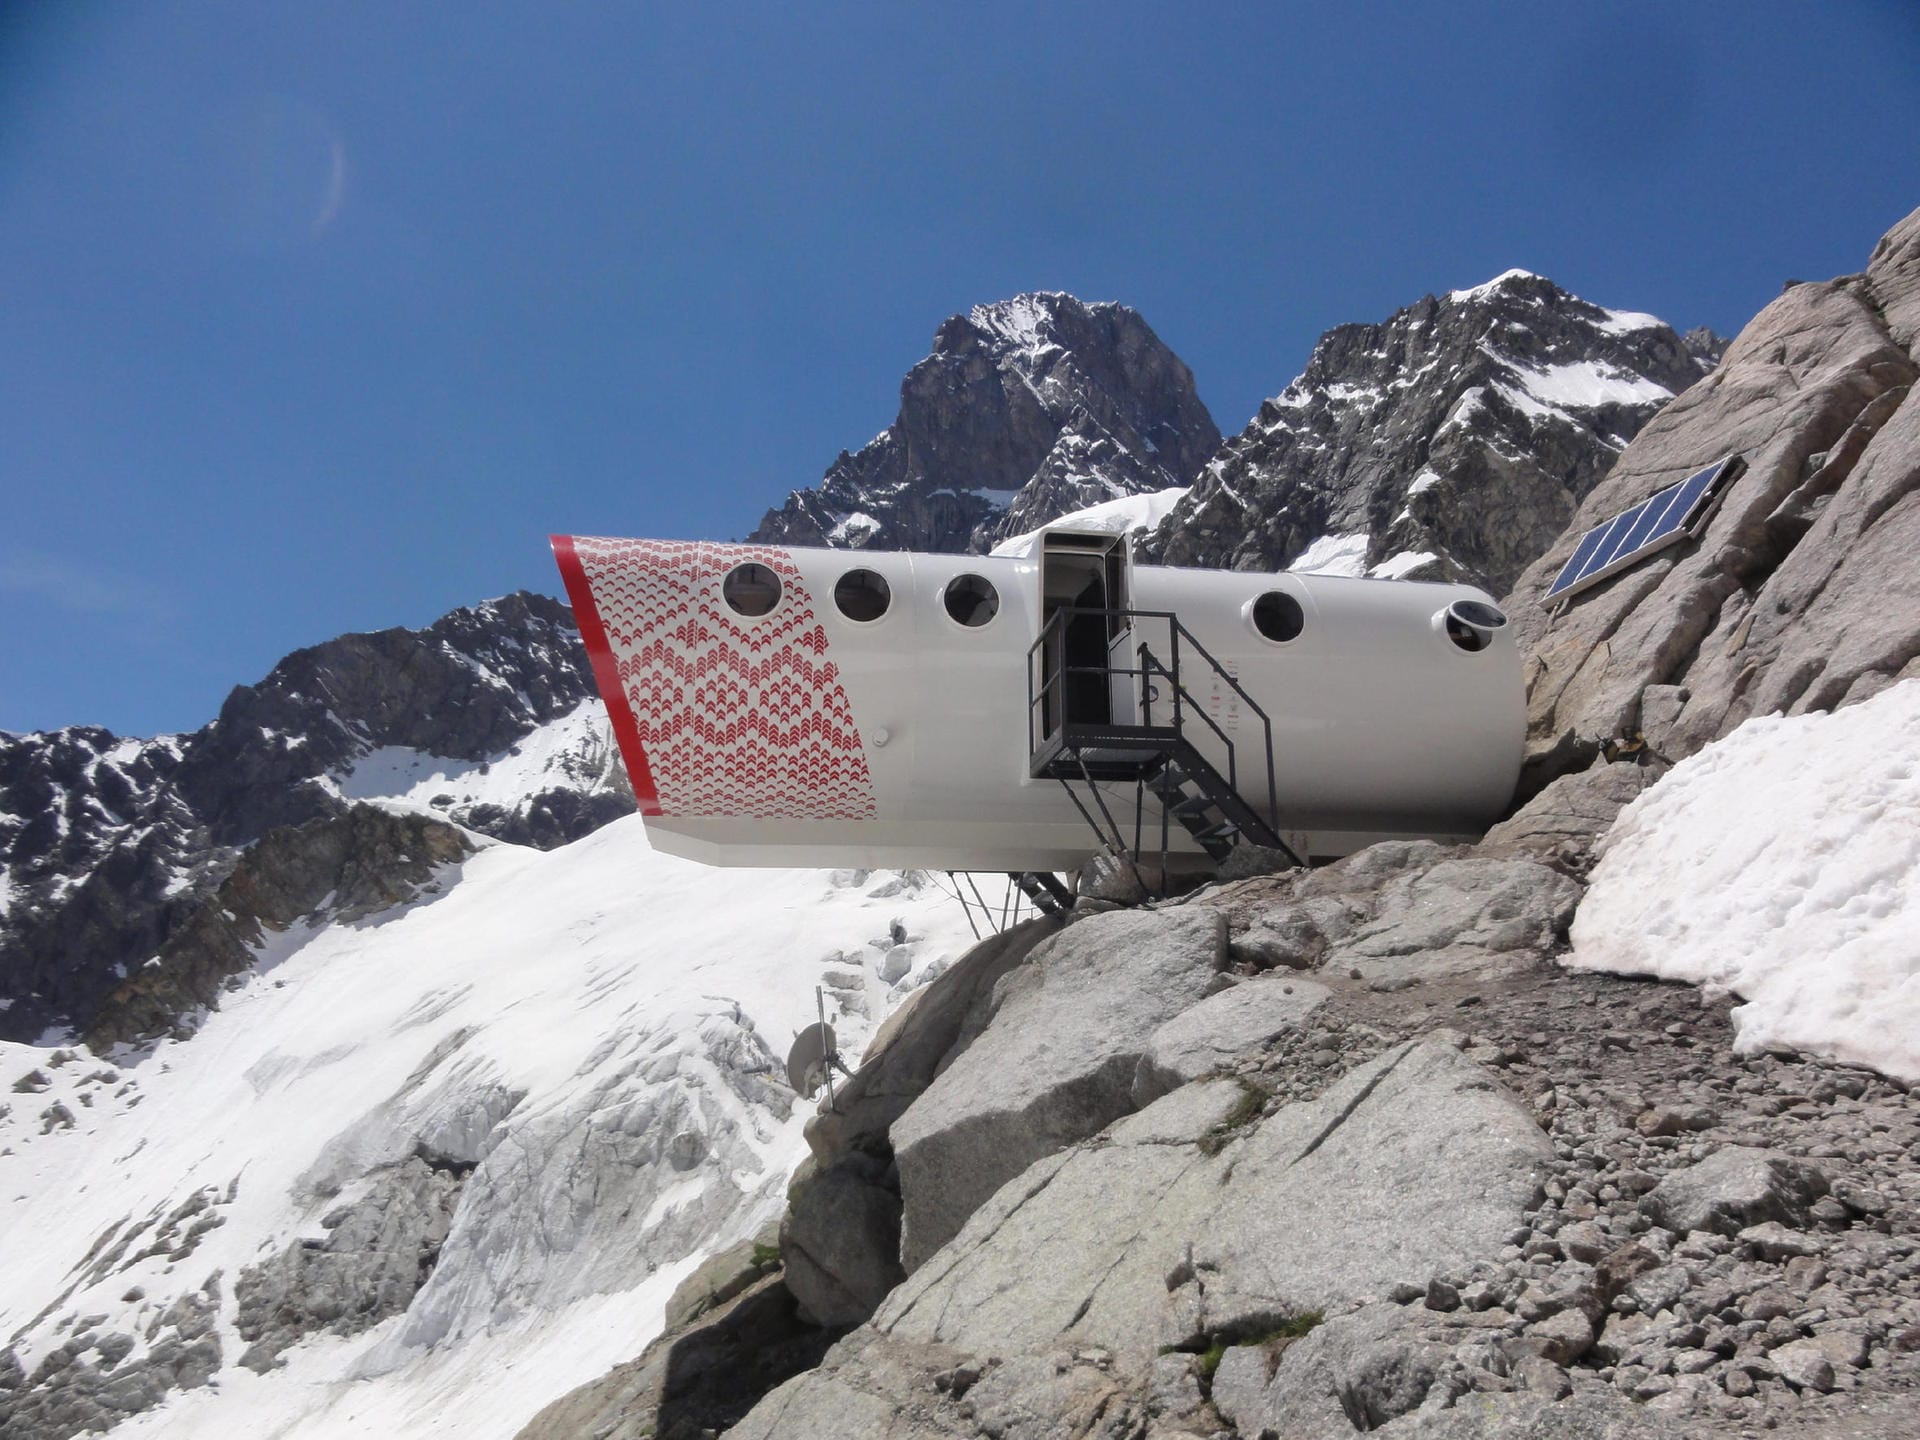 Wer sich auf den Mont Blanc traut, dem geht es vor allem ums Bergsteigen. Die Gervasutti-Schutzhütte kann er auf der italienischen Seite des Berges bestaunen.